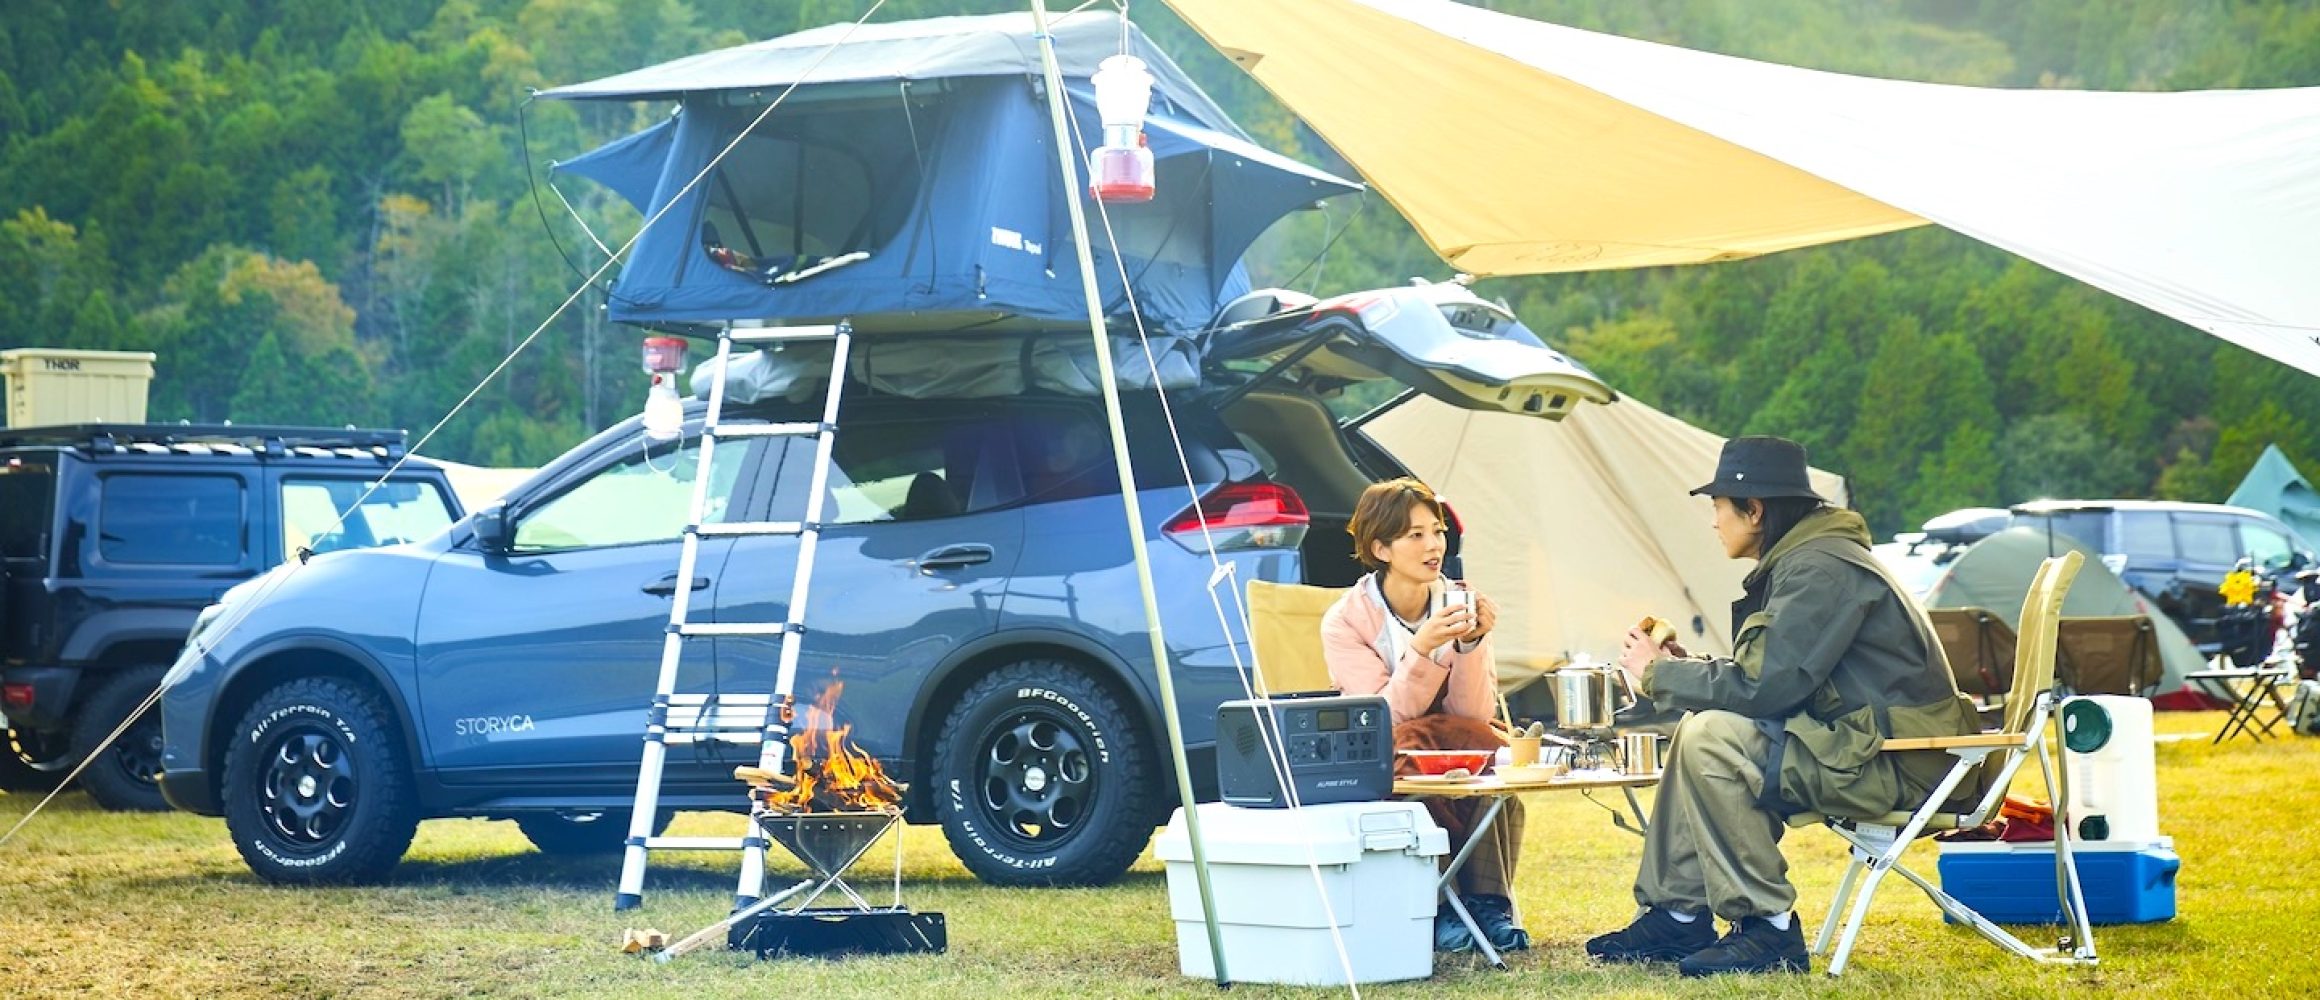 キャンプギア付きのカーシェア「STORYCA」で、キャンプフェスを満喫。